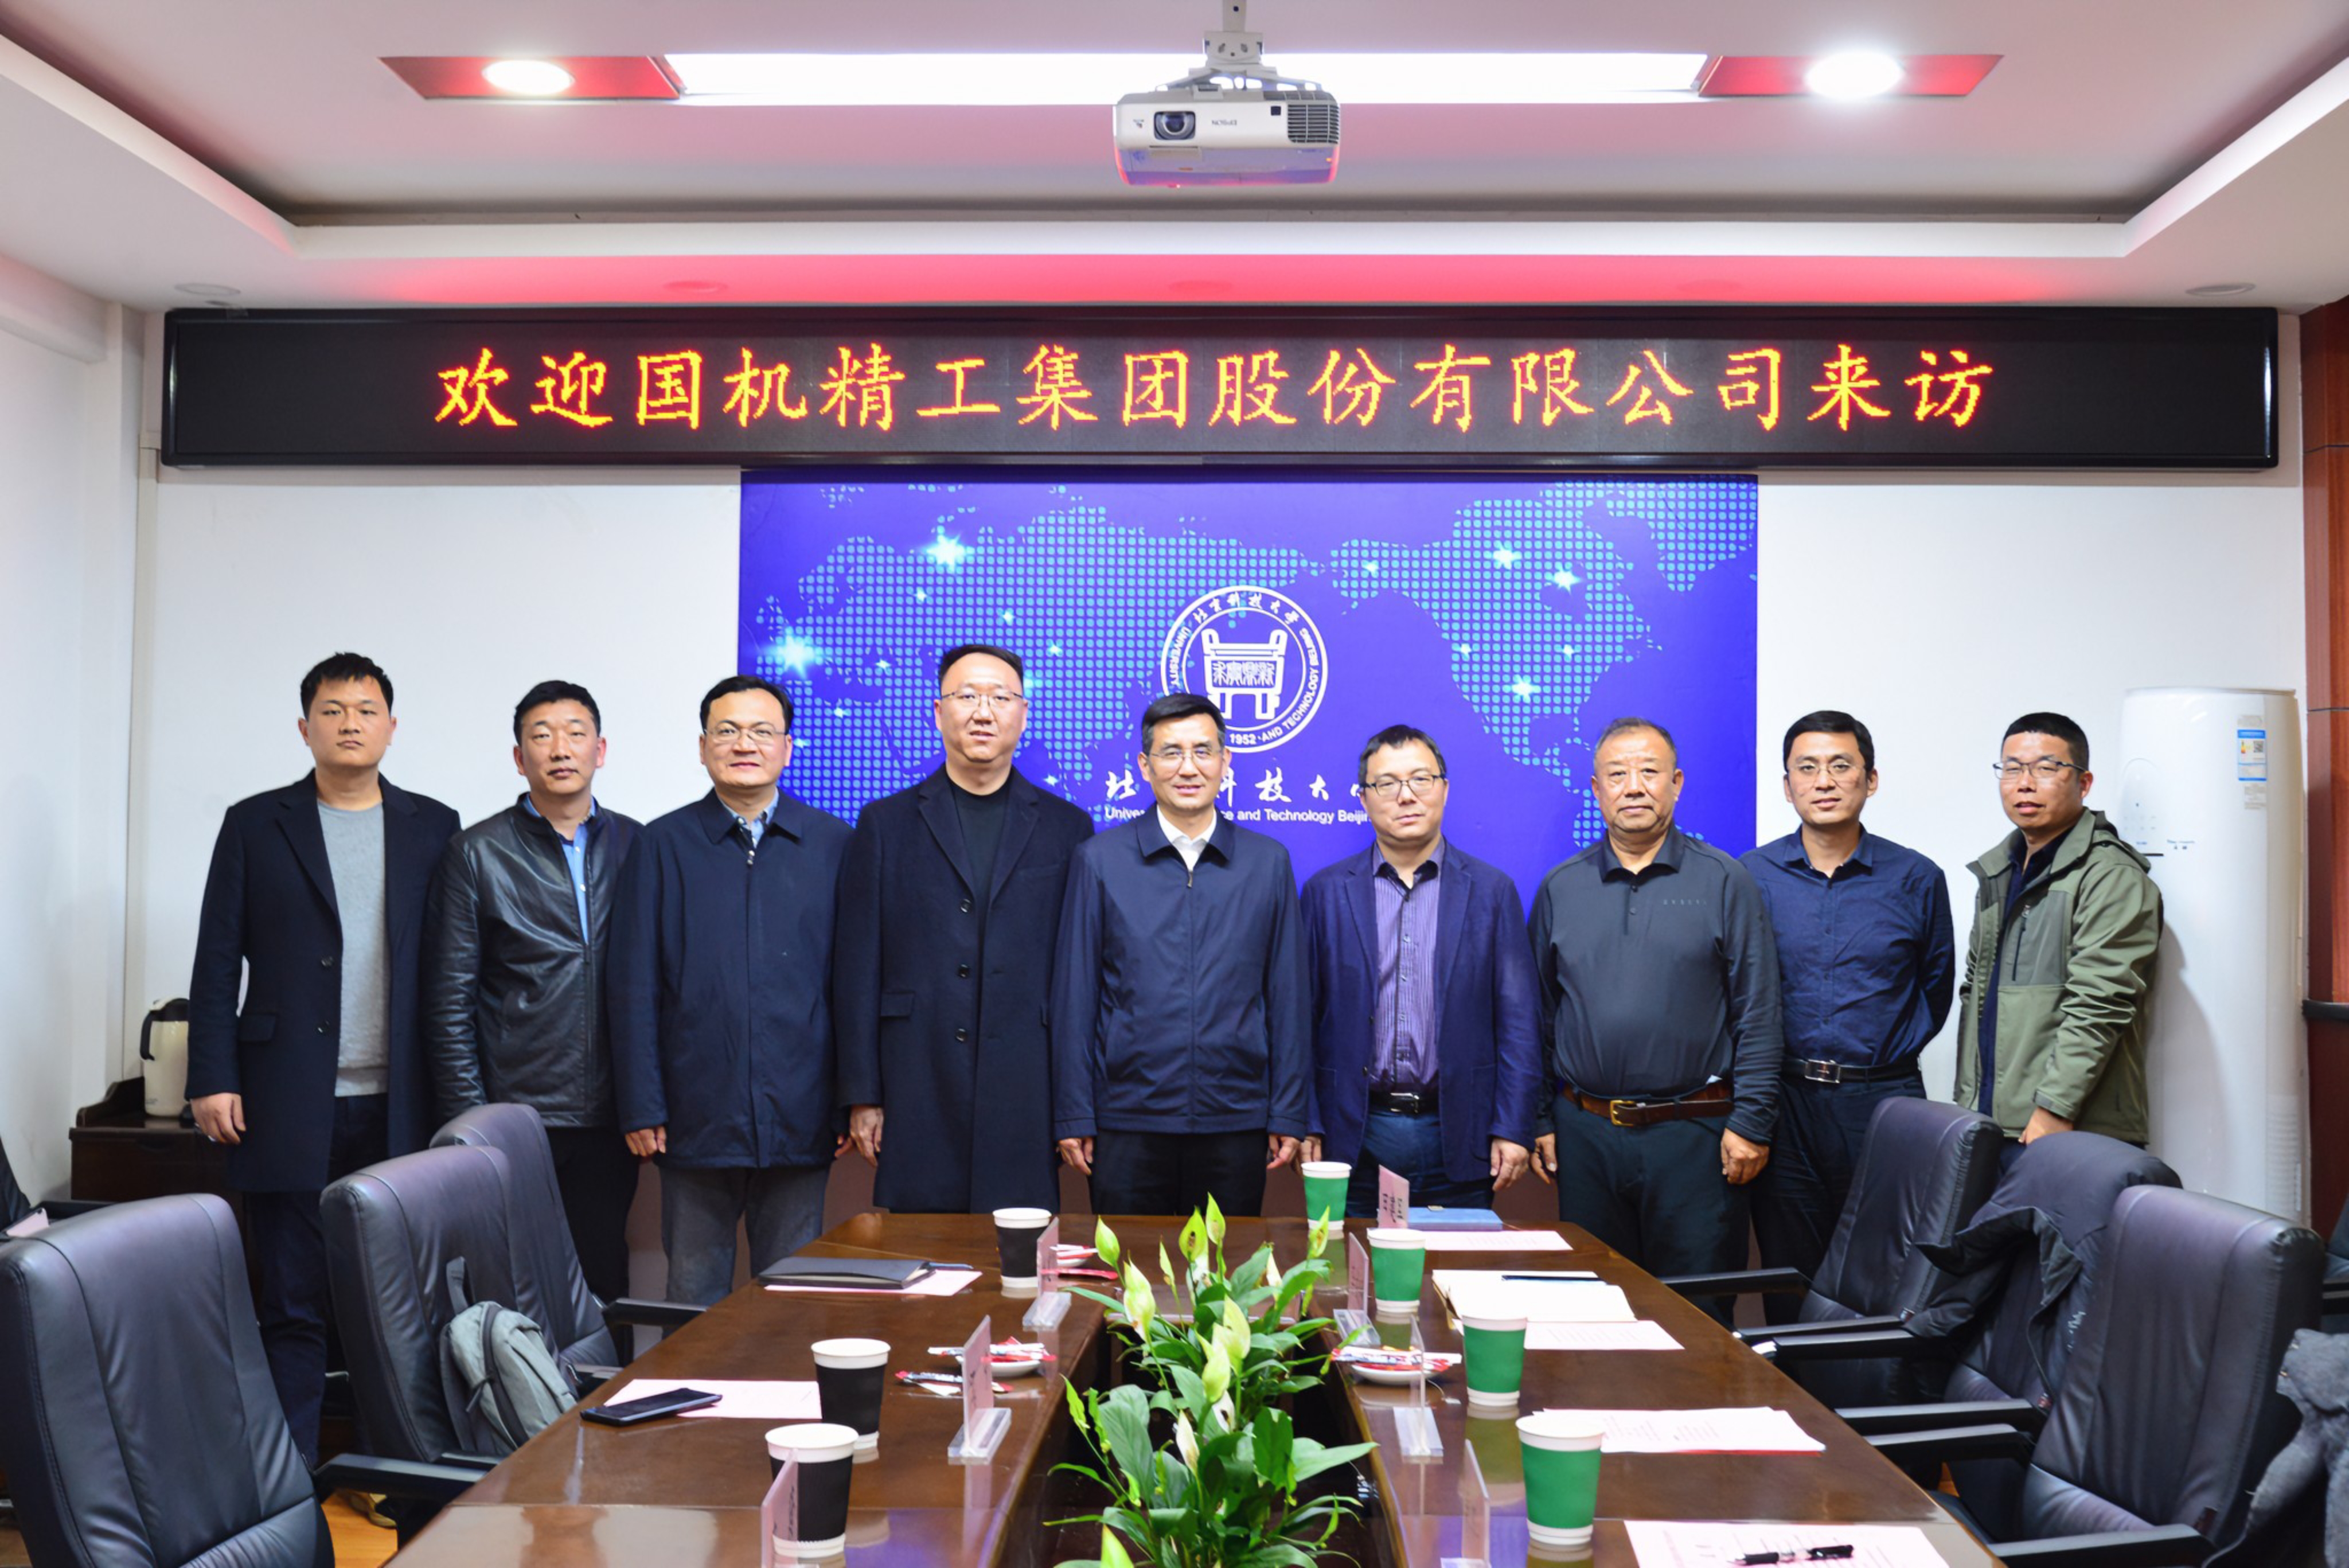 国机精工董事长蒋蔚一行拜访北京科技大学 